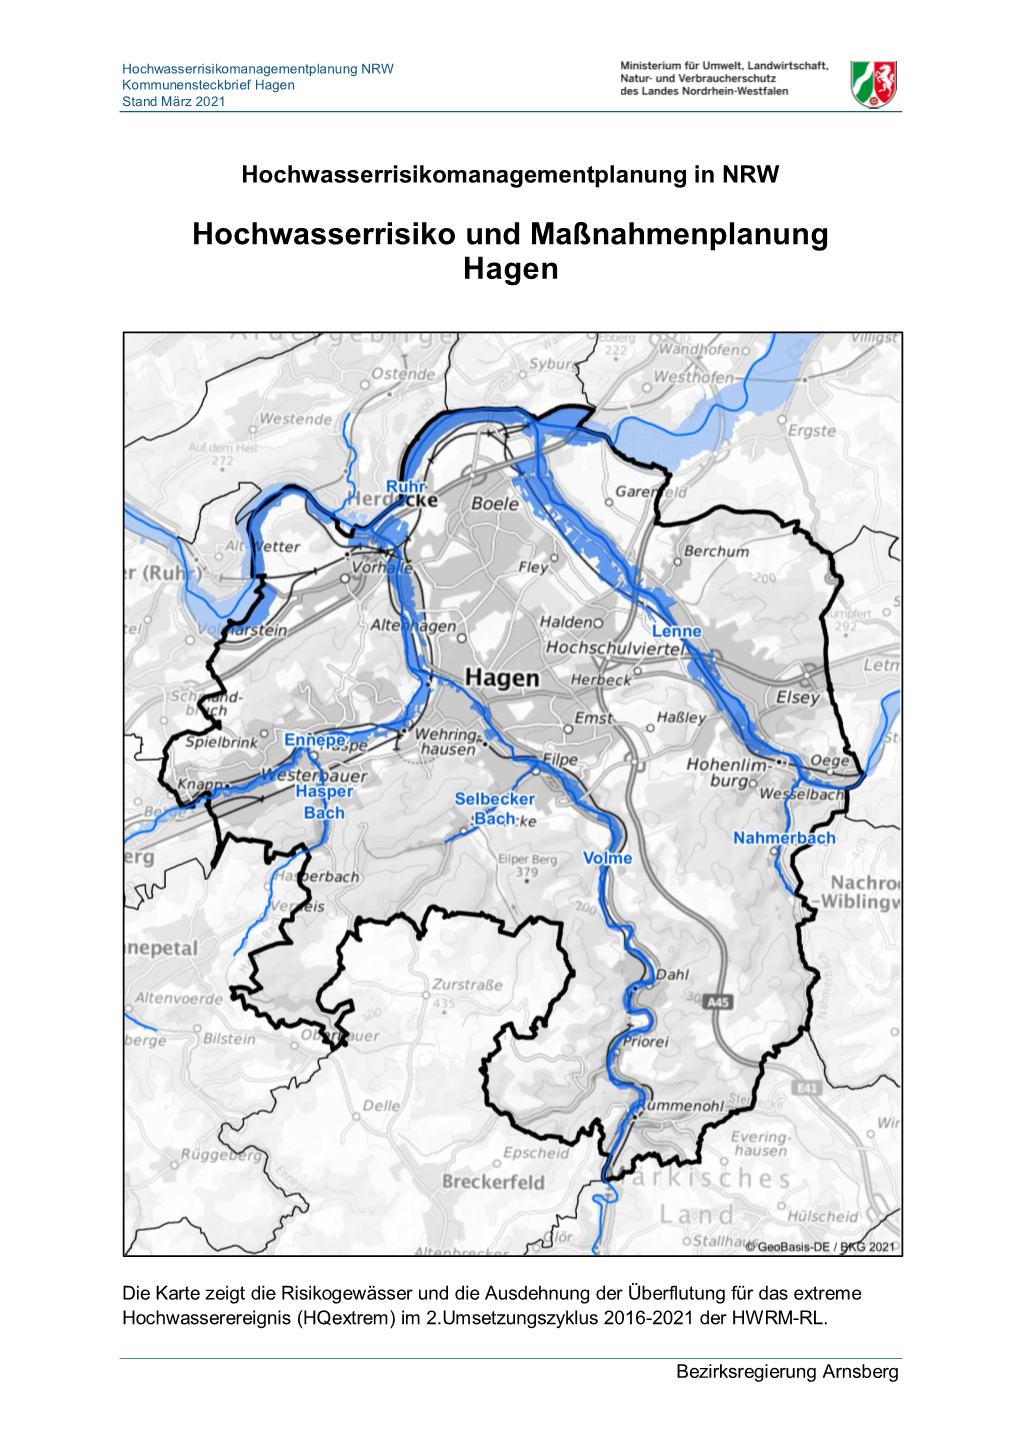 Hochwasserrisiko Und Maßnahmenplanung Hagen